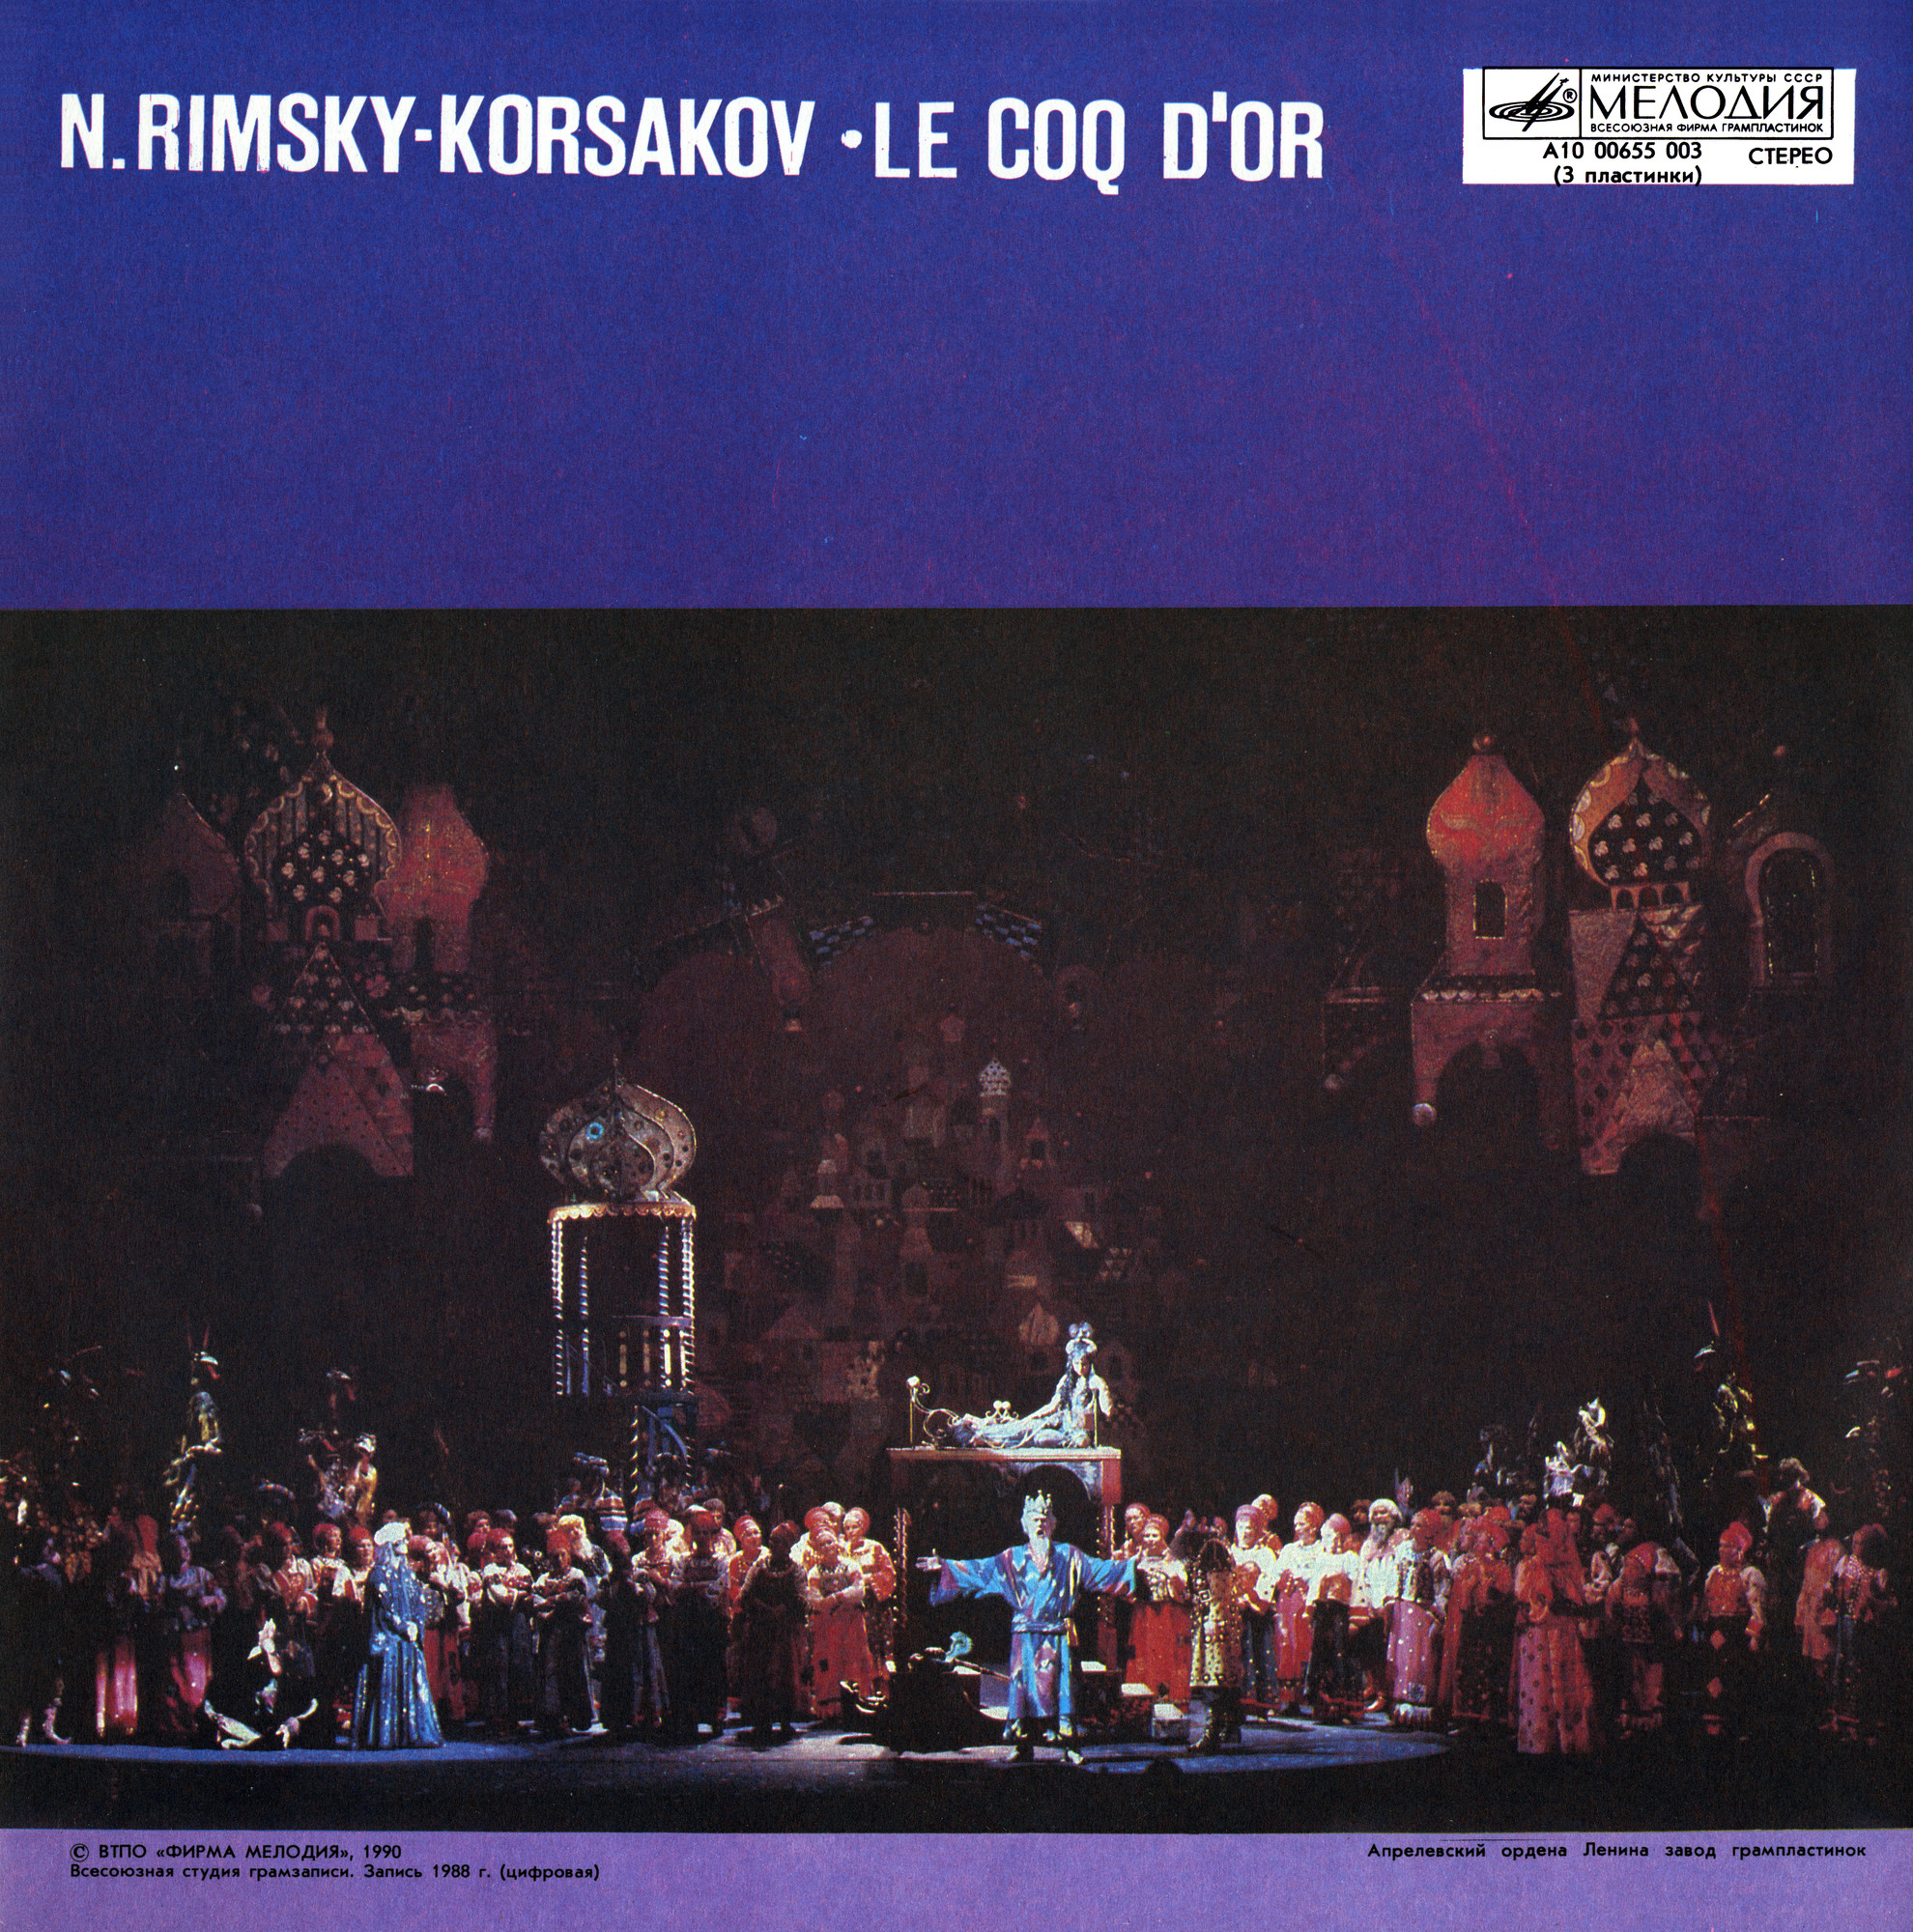 Н. РИМСКИЙ-КОРСАКОВ (1844-1908): «Золотой петушок», опера в трех действиях.